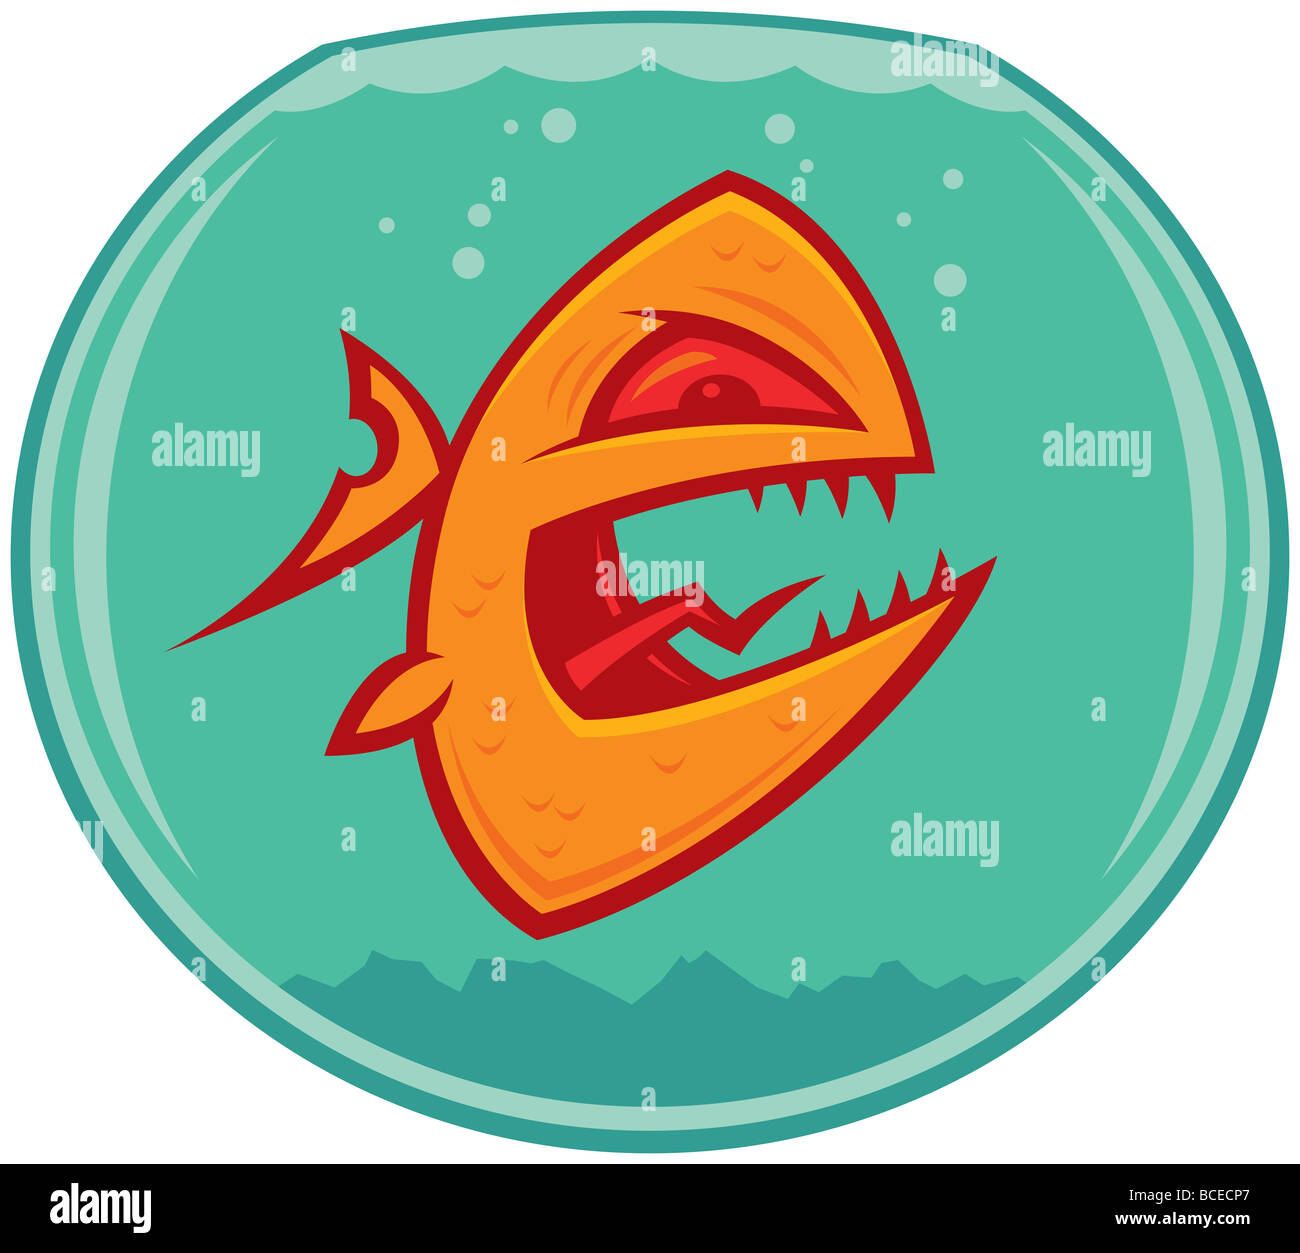 Vector cartoon d'un cercle vicieux en colère et poisson rouge dans un petit bocal. Il pourrait aussi être un piranha. Banque D'Images